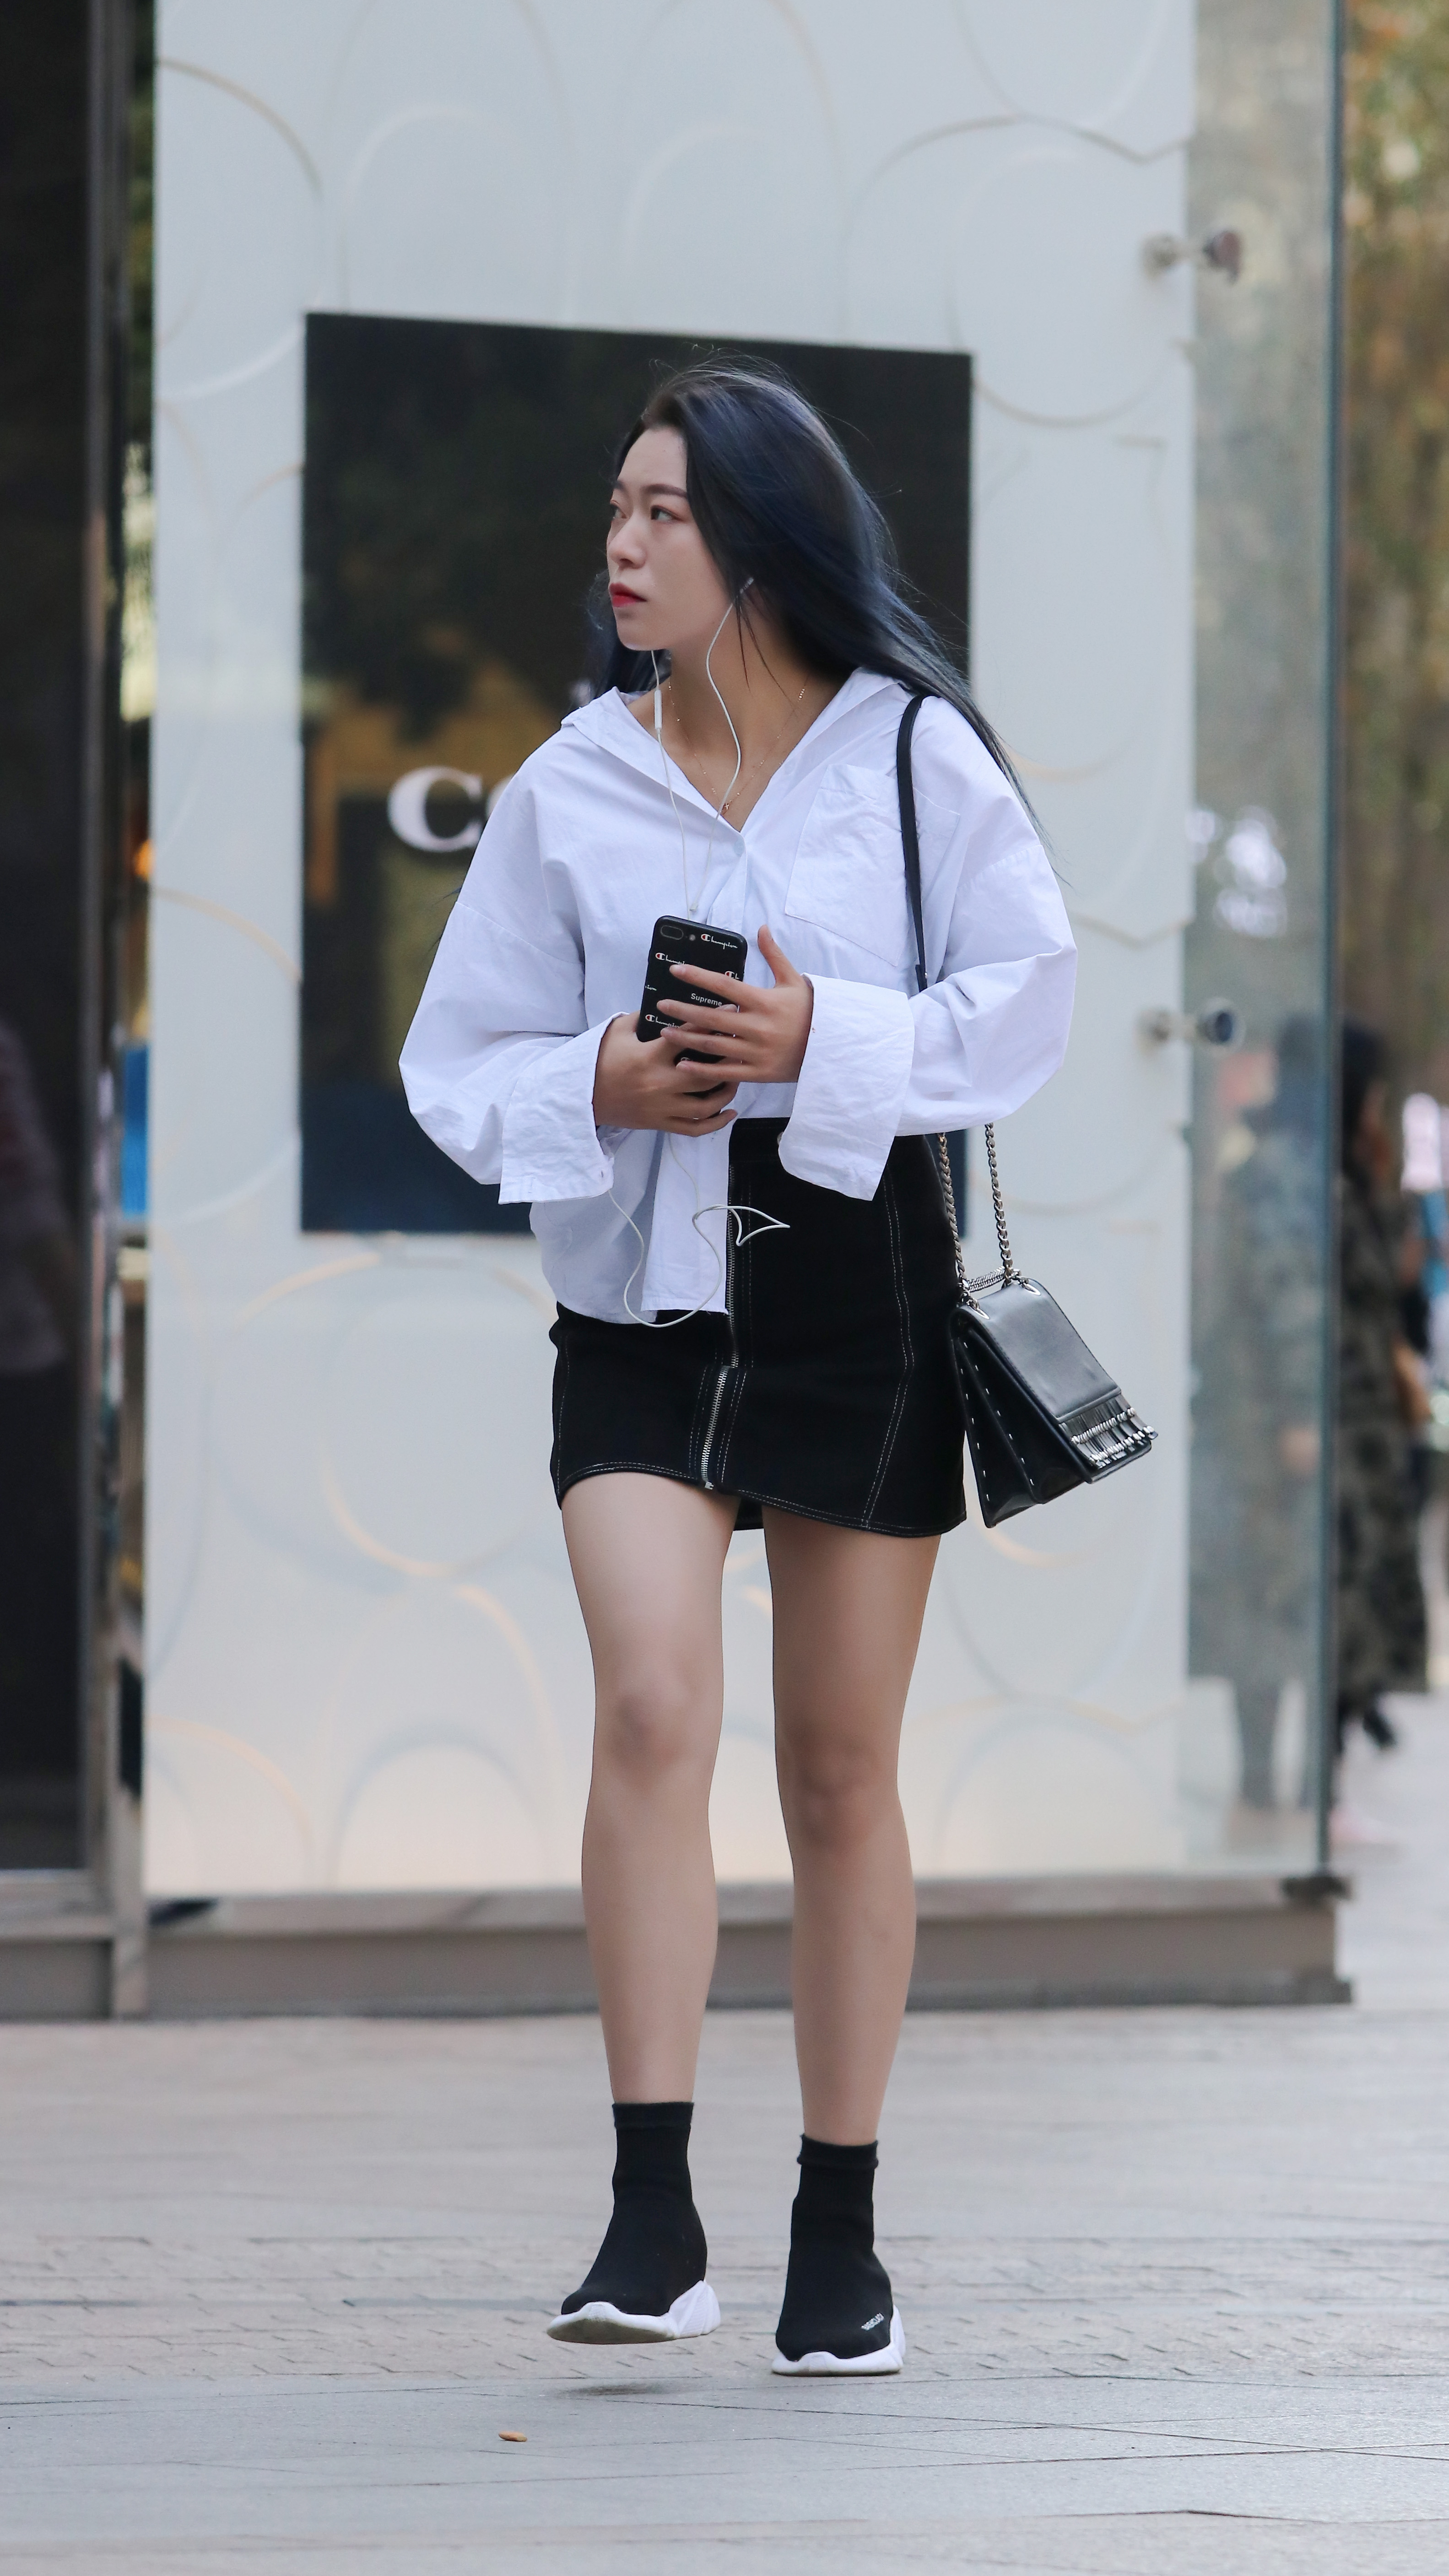 街拍:白衬衫搭黑色短裙,腿部线条紧绷,属于成熟女人的小性感